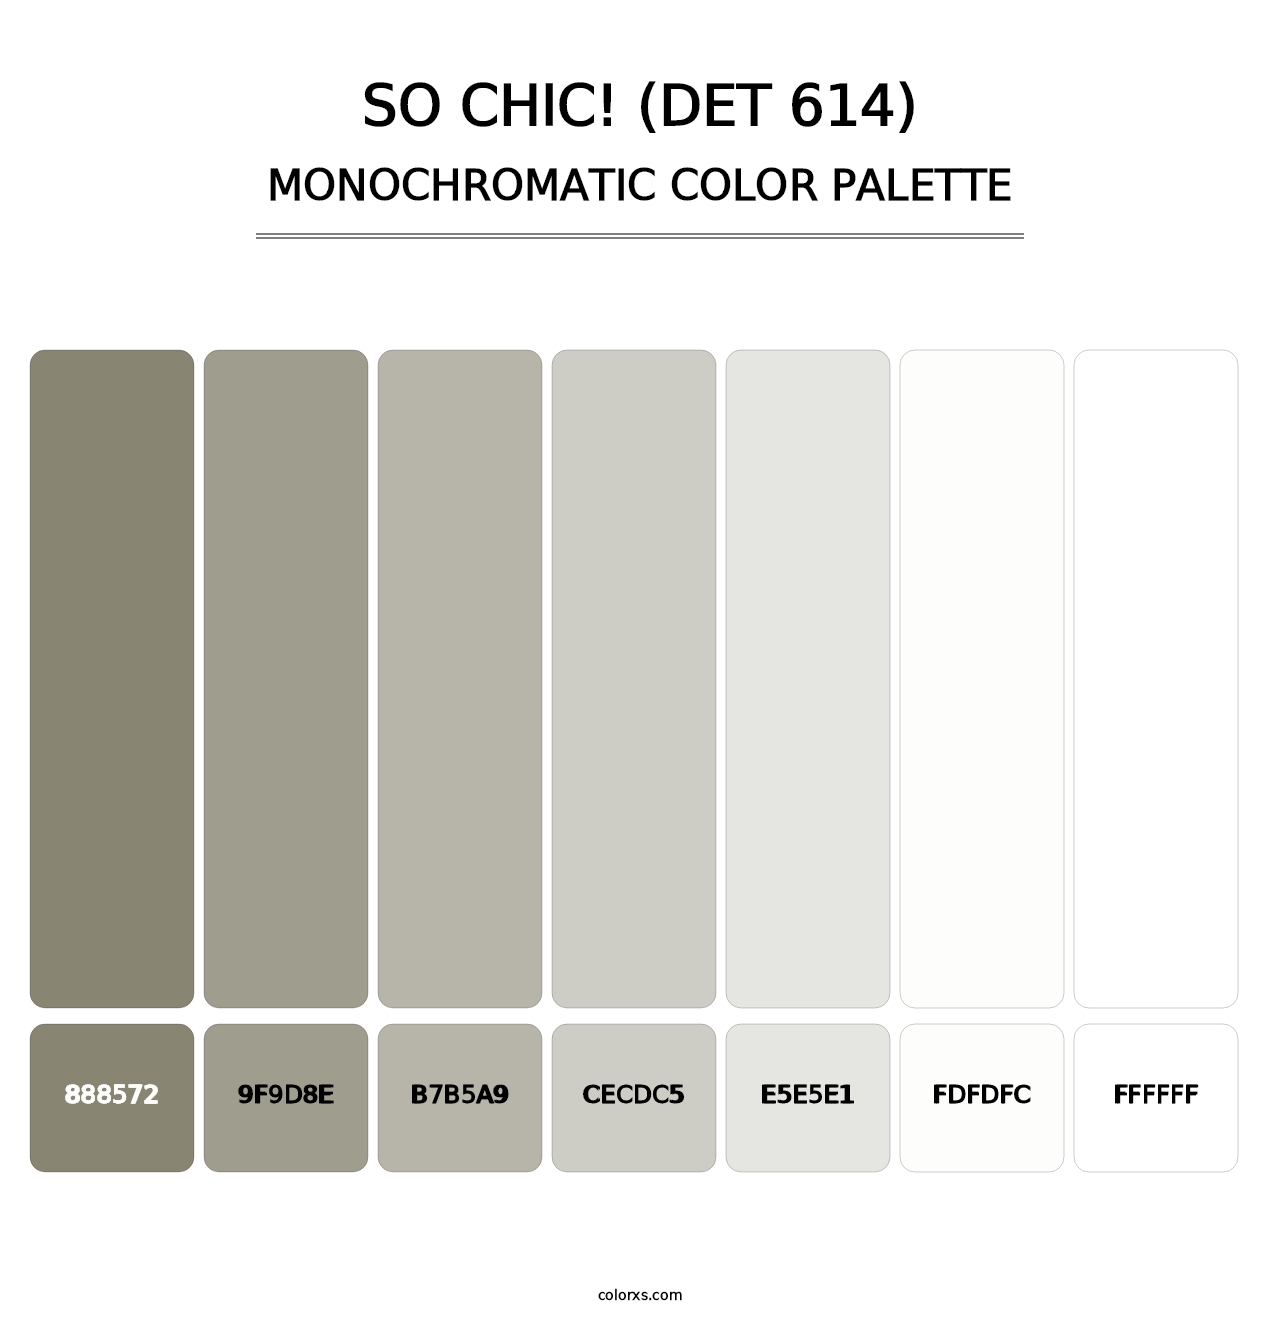 So Chic! (DET 614) - Monochromatic Color Palette